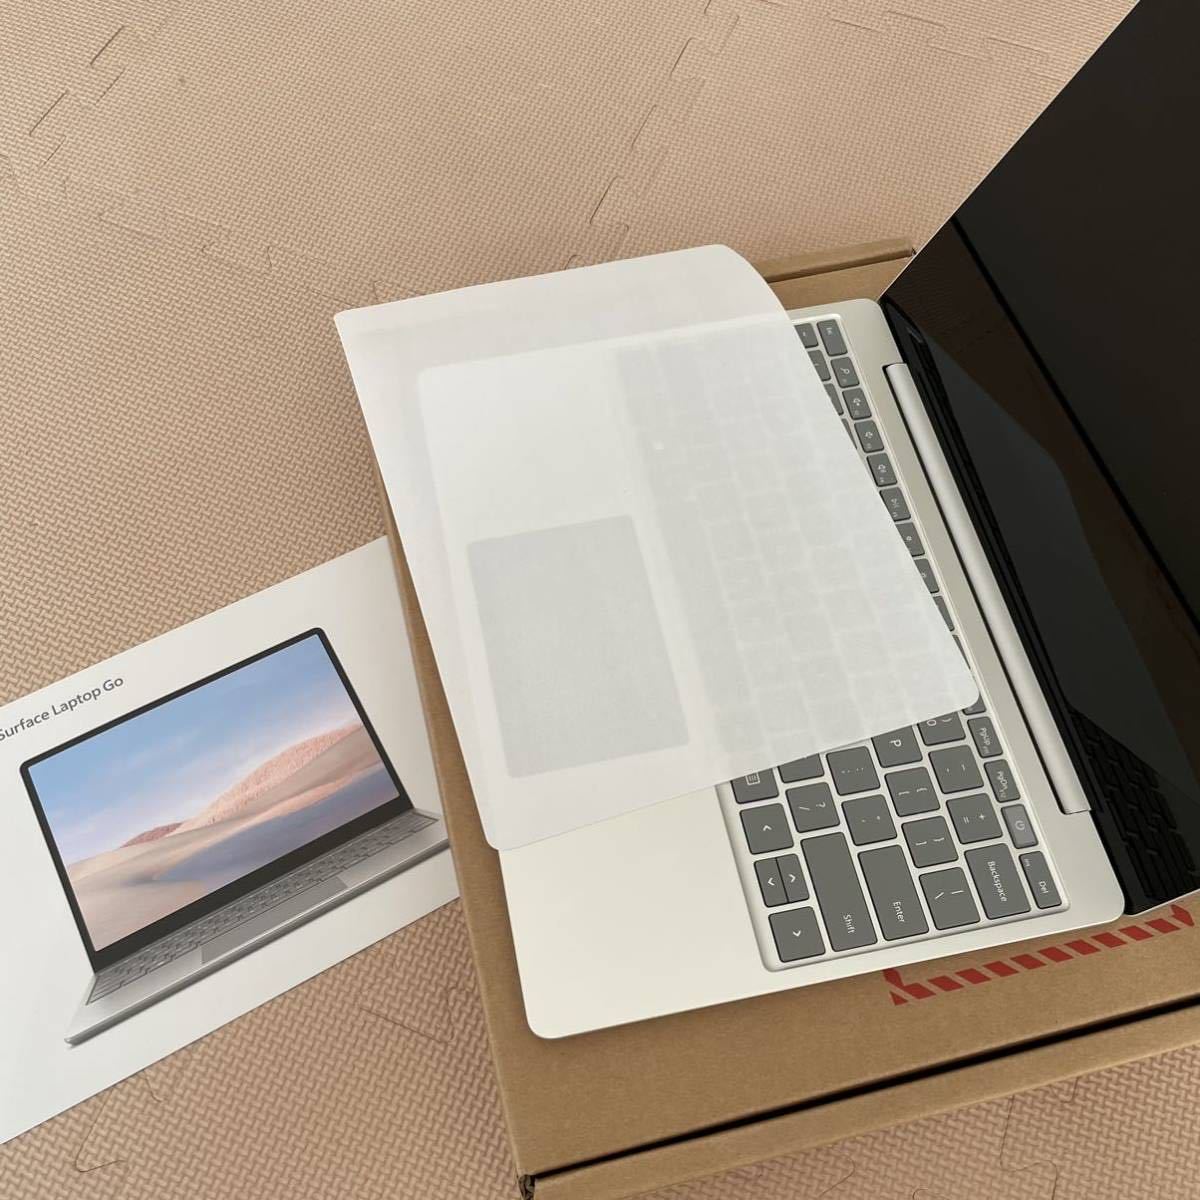 新作入荷-超特価 【Ryan様用】Surface プラチナ laptop ノートPC